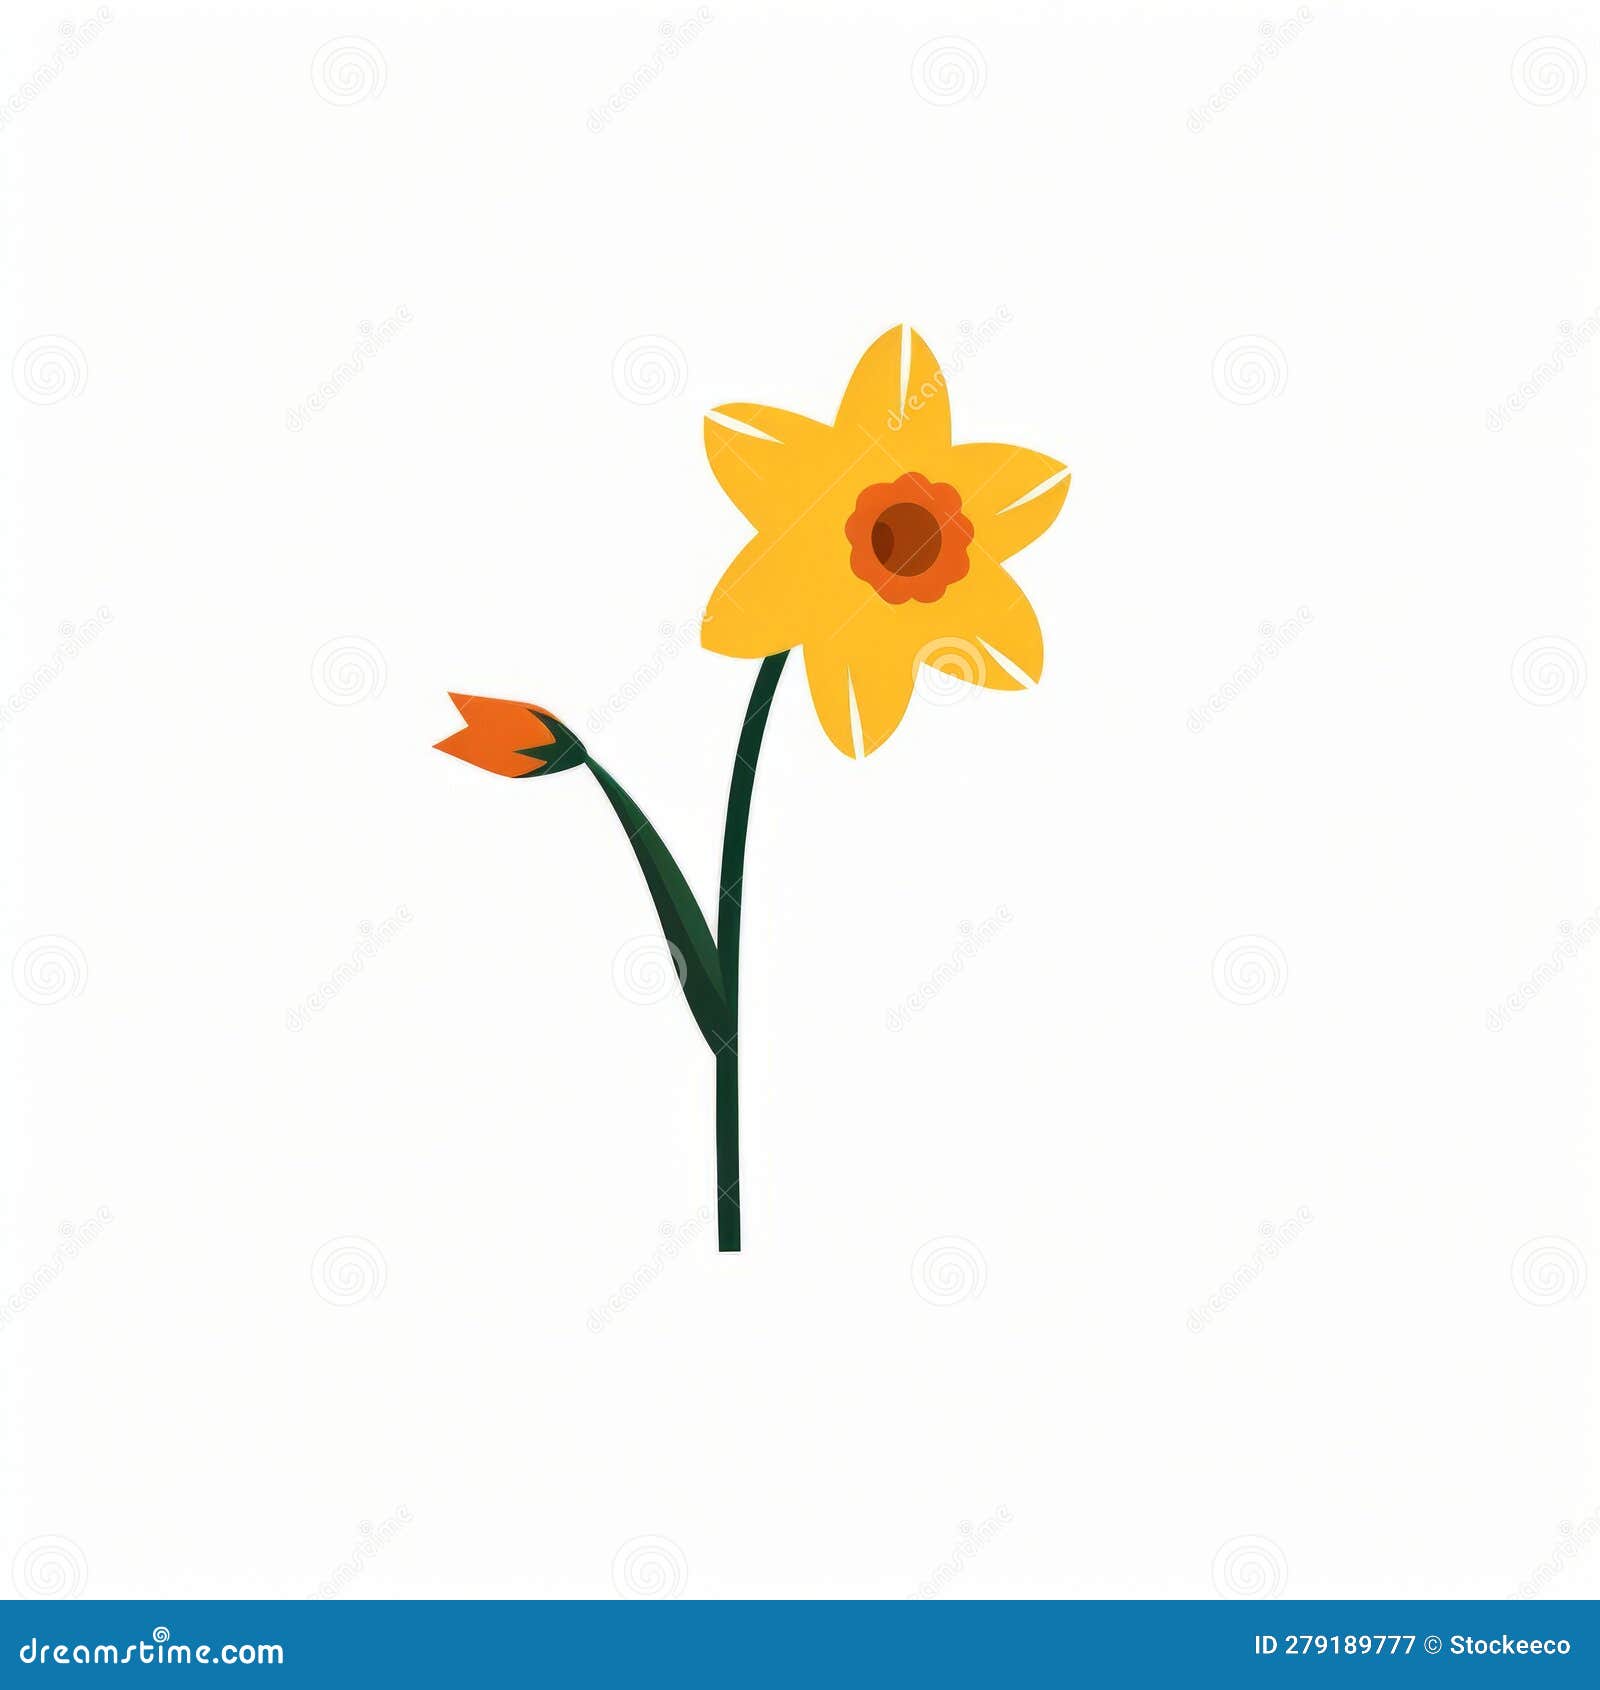 Daffodil Silhouette Vector: Minimalistic Identification Symbol Stock ...